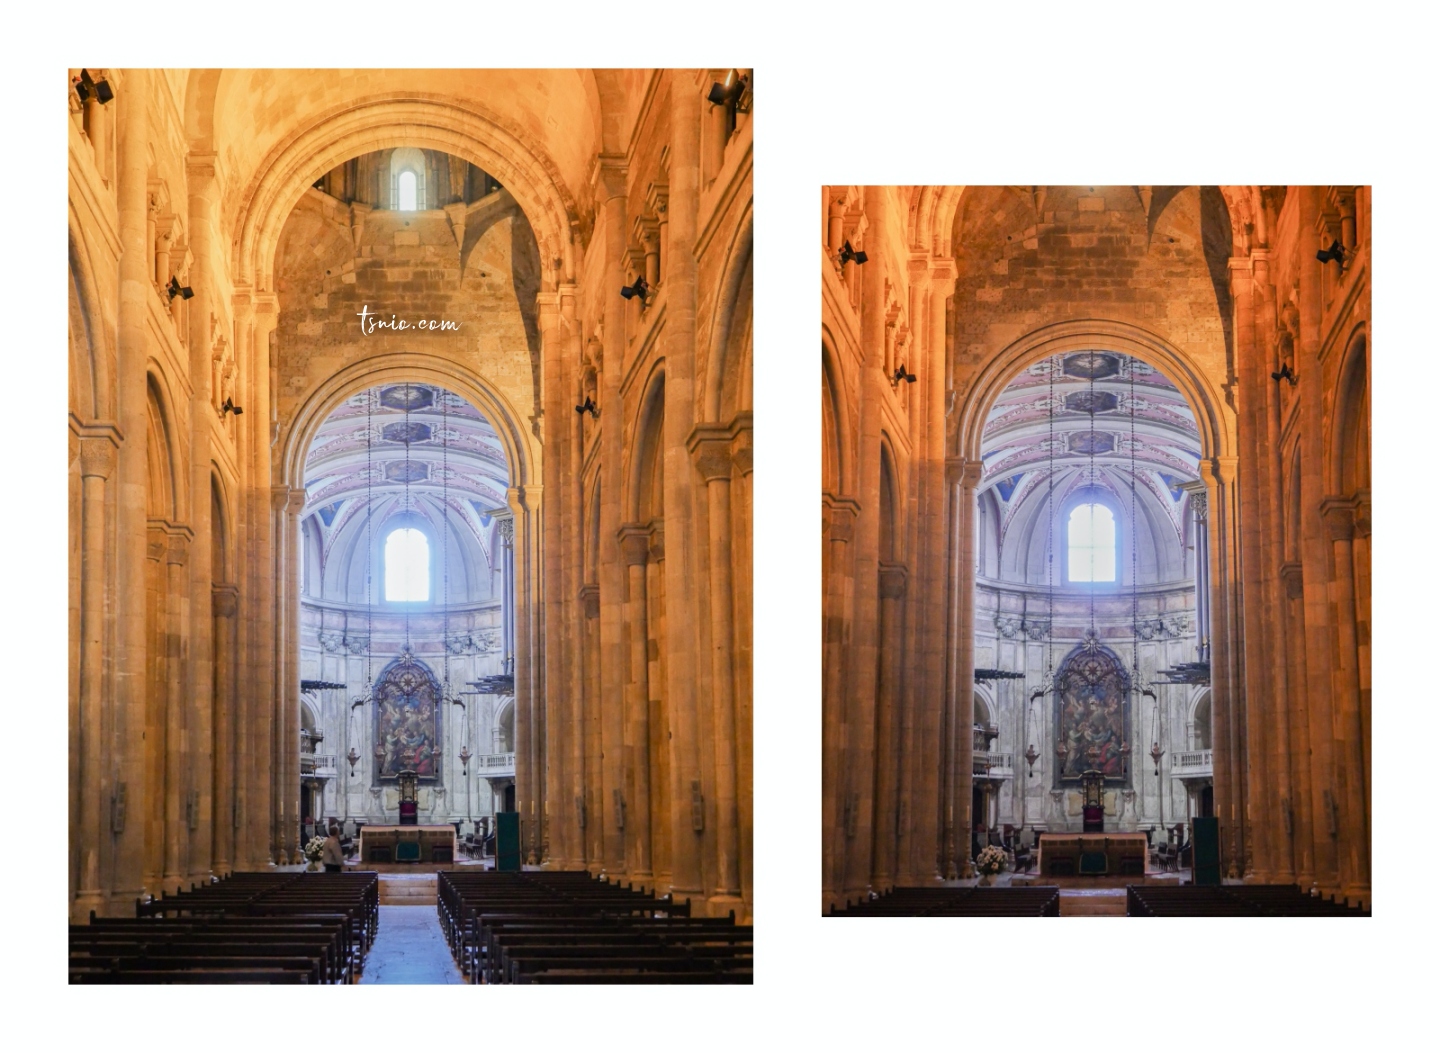 葡萄牙里斯本景點 里斯本主教座堂 Sé de Lisboa 黃色叮叮車與教堂的相遇